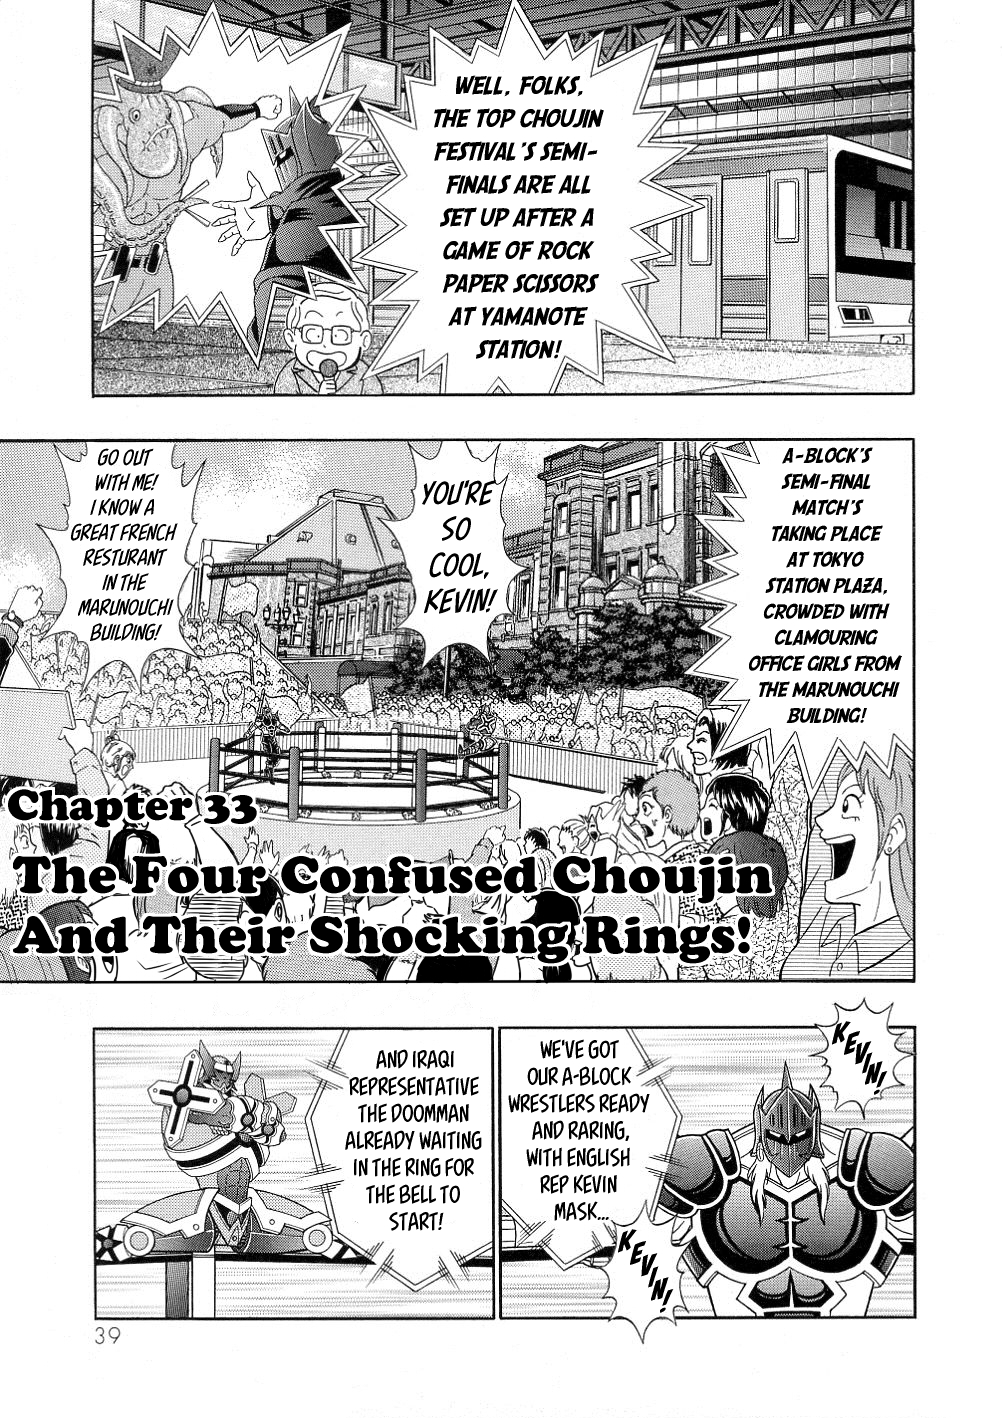 Kinnikuman II Sei: All Choujin Daishingeki Vol. 3 Ch. 33 The Four Confused Choujin And Their Shocking Rings!